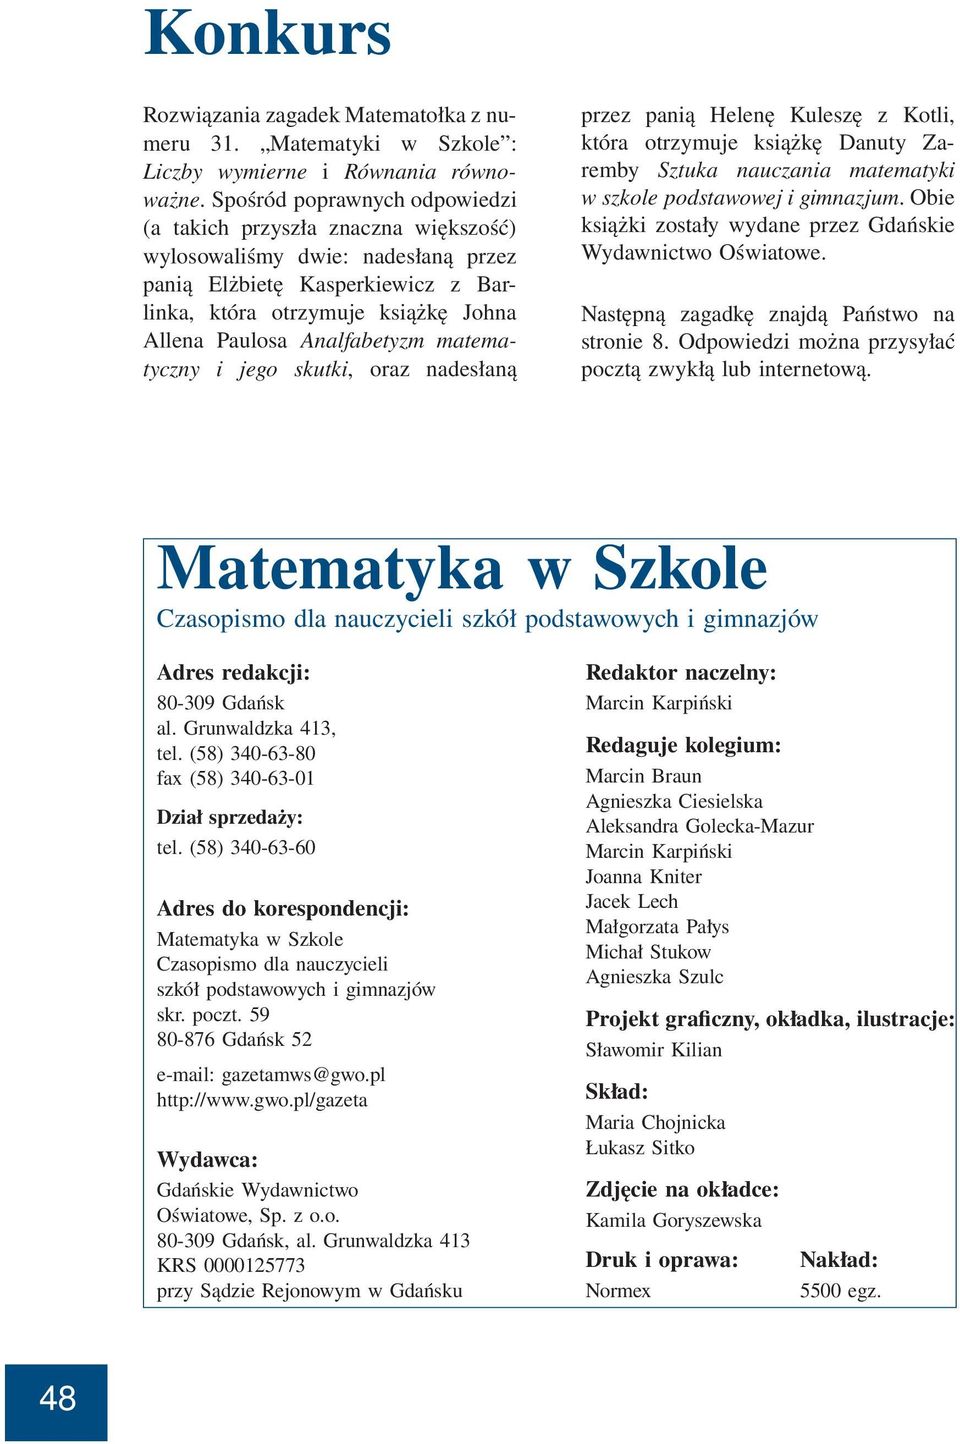 matematyczny i jego kutki, oraz nadełaną przez panią Helenę Kulezę z Kotli, która otrzymuje kiążkę Danuty Zaremby Sztuka nauczania matematyki w zkole podtawowej i gimnazjum.